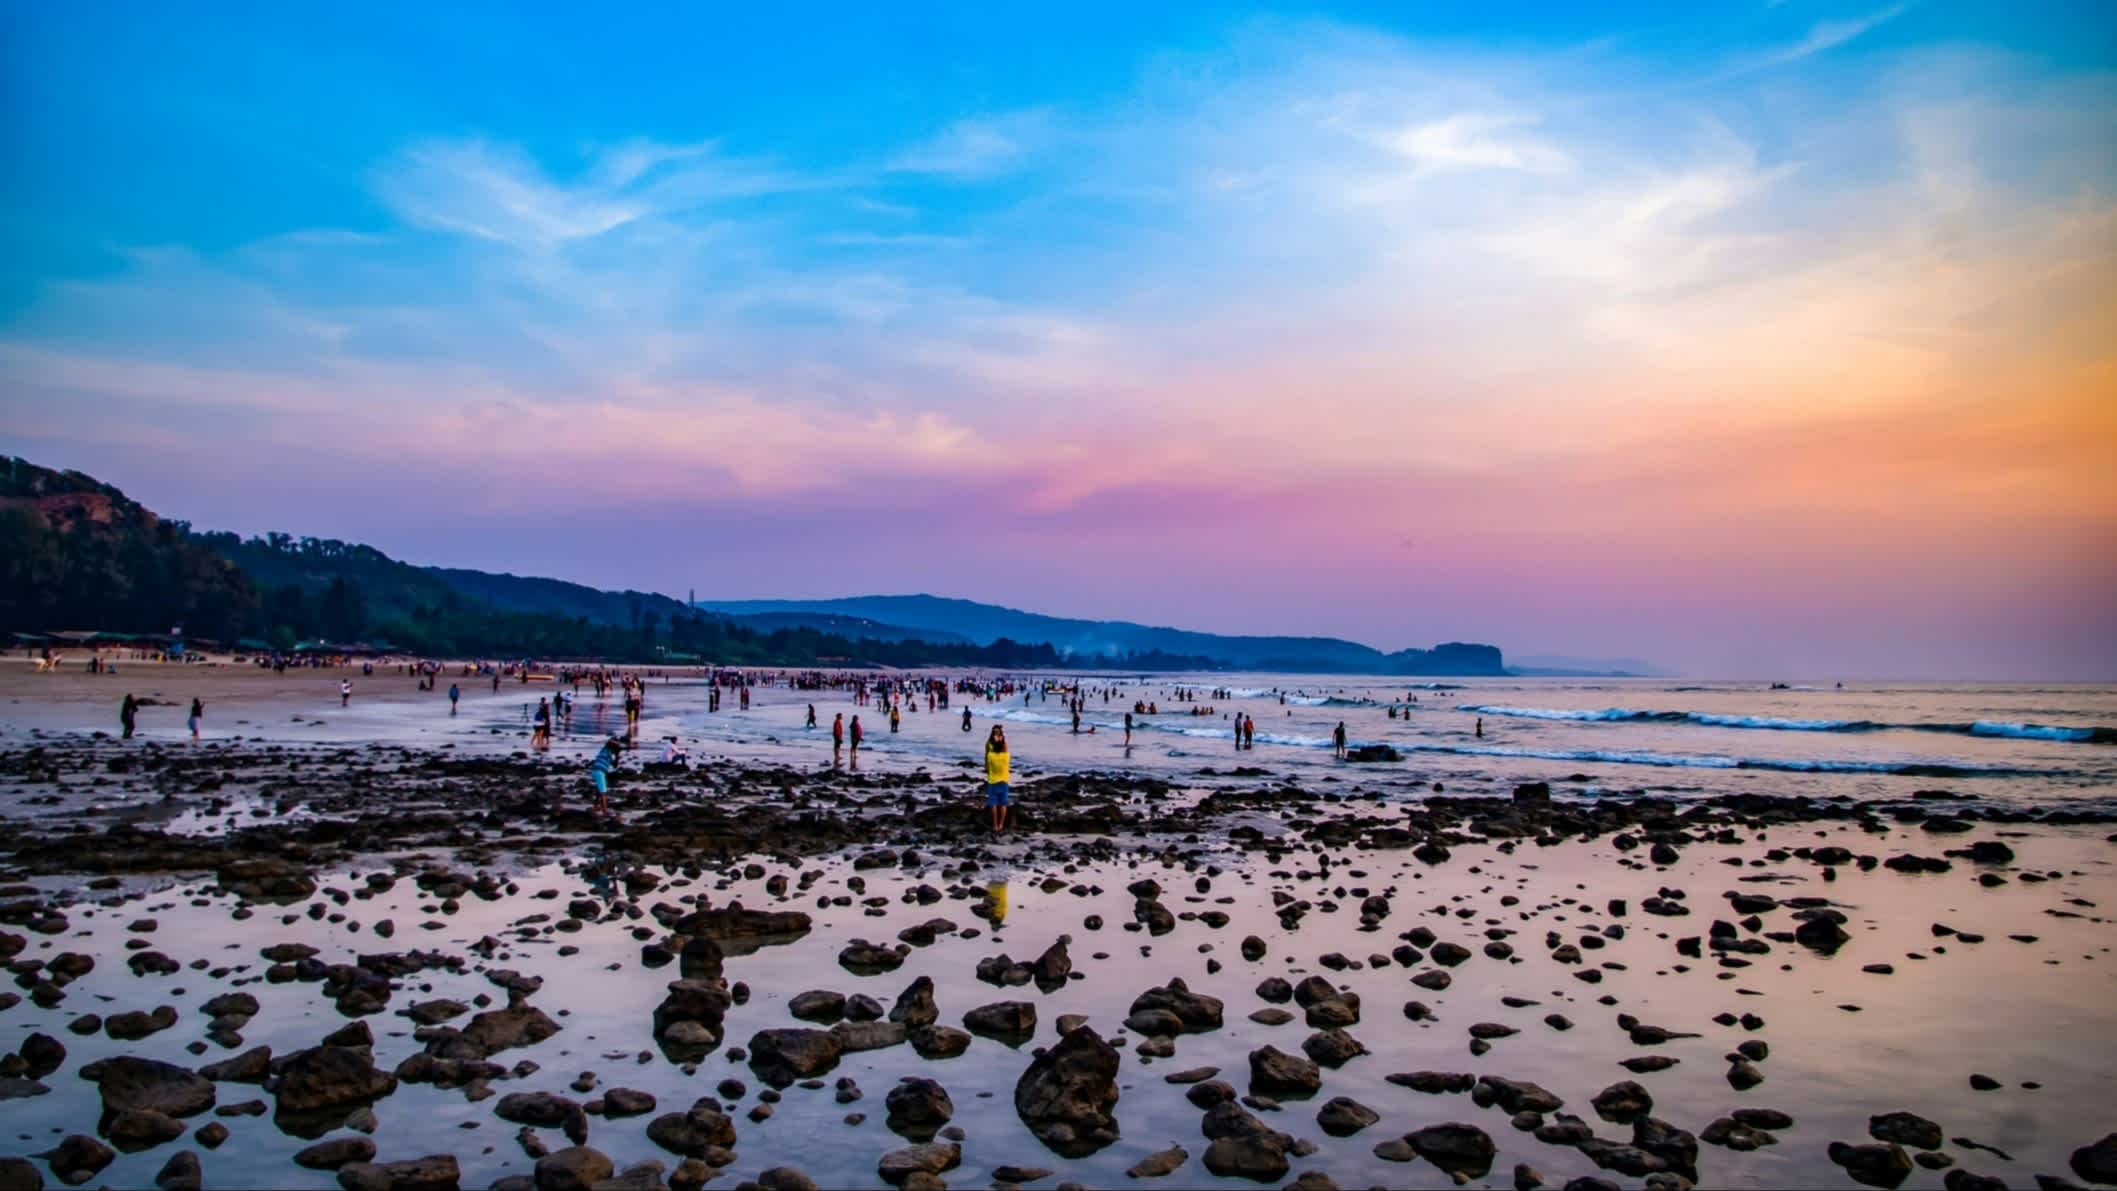 Bunter Sonnenuntergang am Kashids Strand, Maharashtra, Indien mit Menschen im Wasser bei Ebbe und freigelegten Felsen.